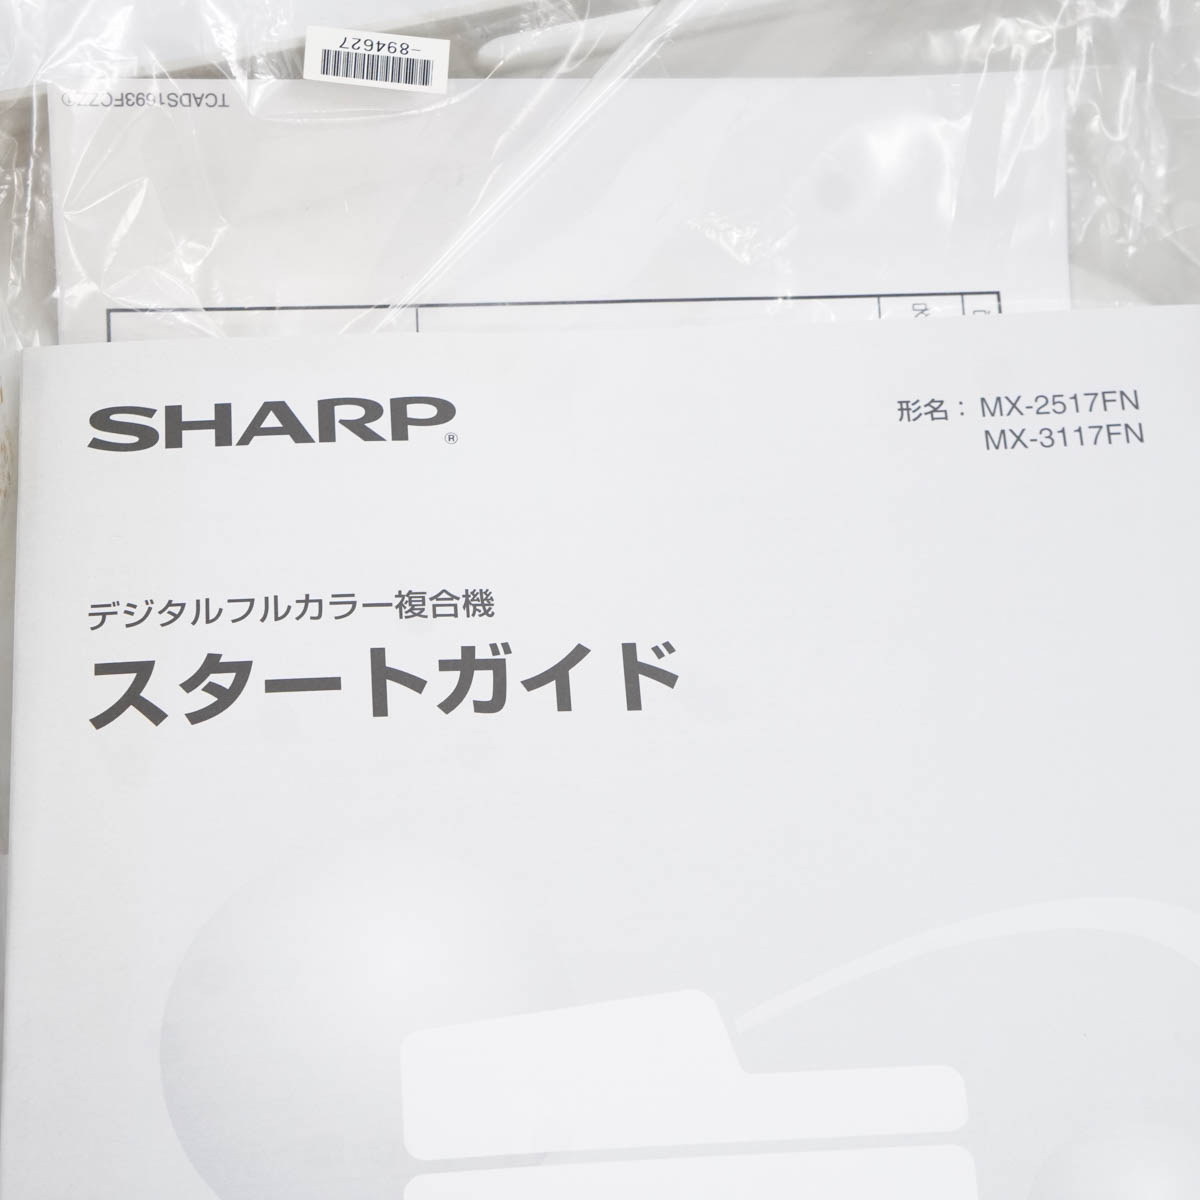 １着でも送料無料 DIRWINGSショップ PG USED 8日保証 印刷4593枚 SHARP MX-2517 MX-2517FN デジタルフルカラー複合機  A3 ソフトウェア ST04018-0020